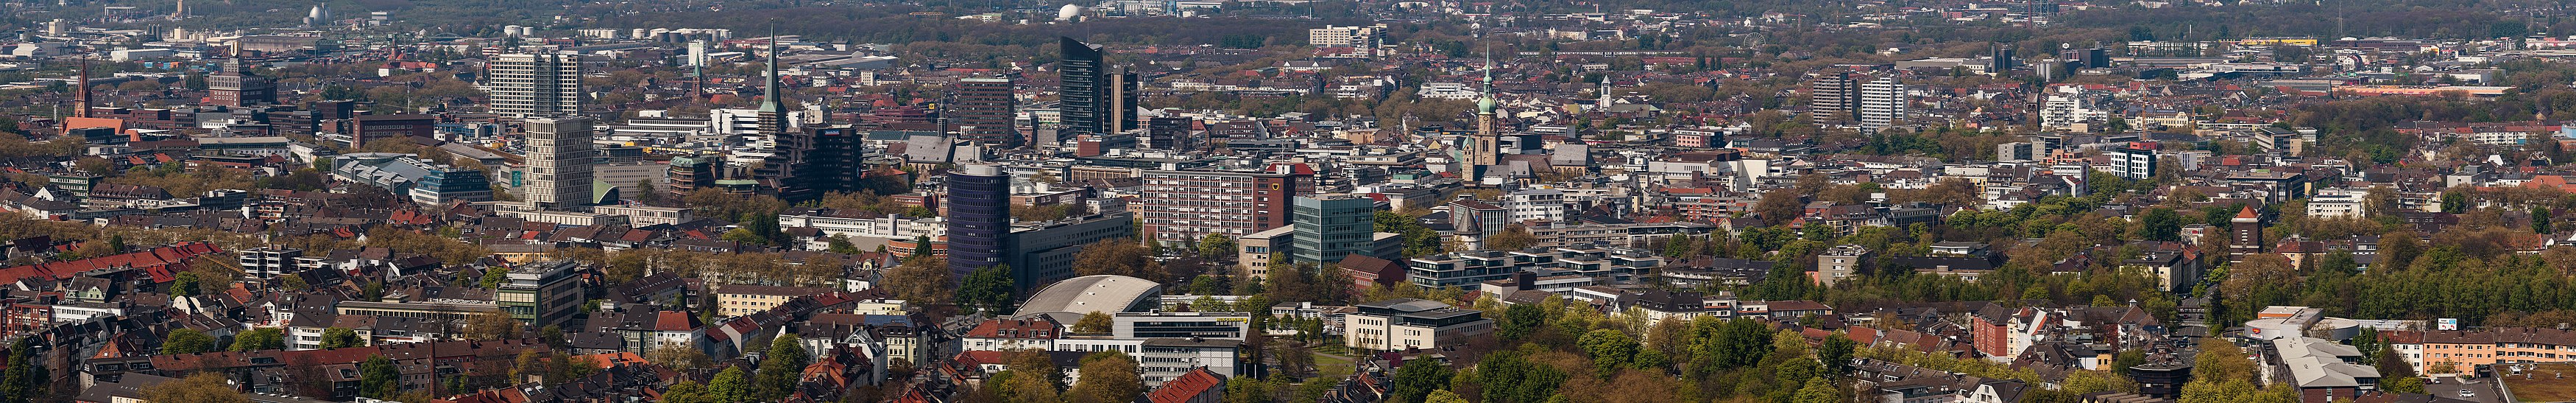 Dortmund City Panorama.jpg